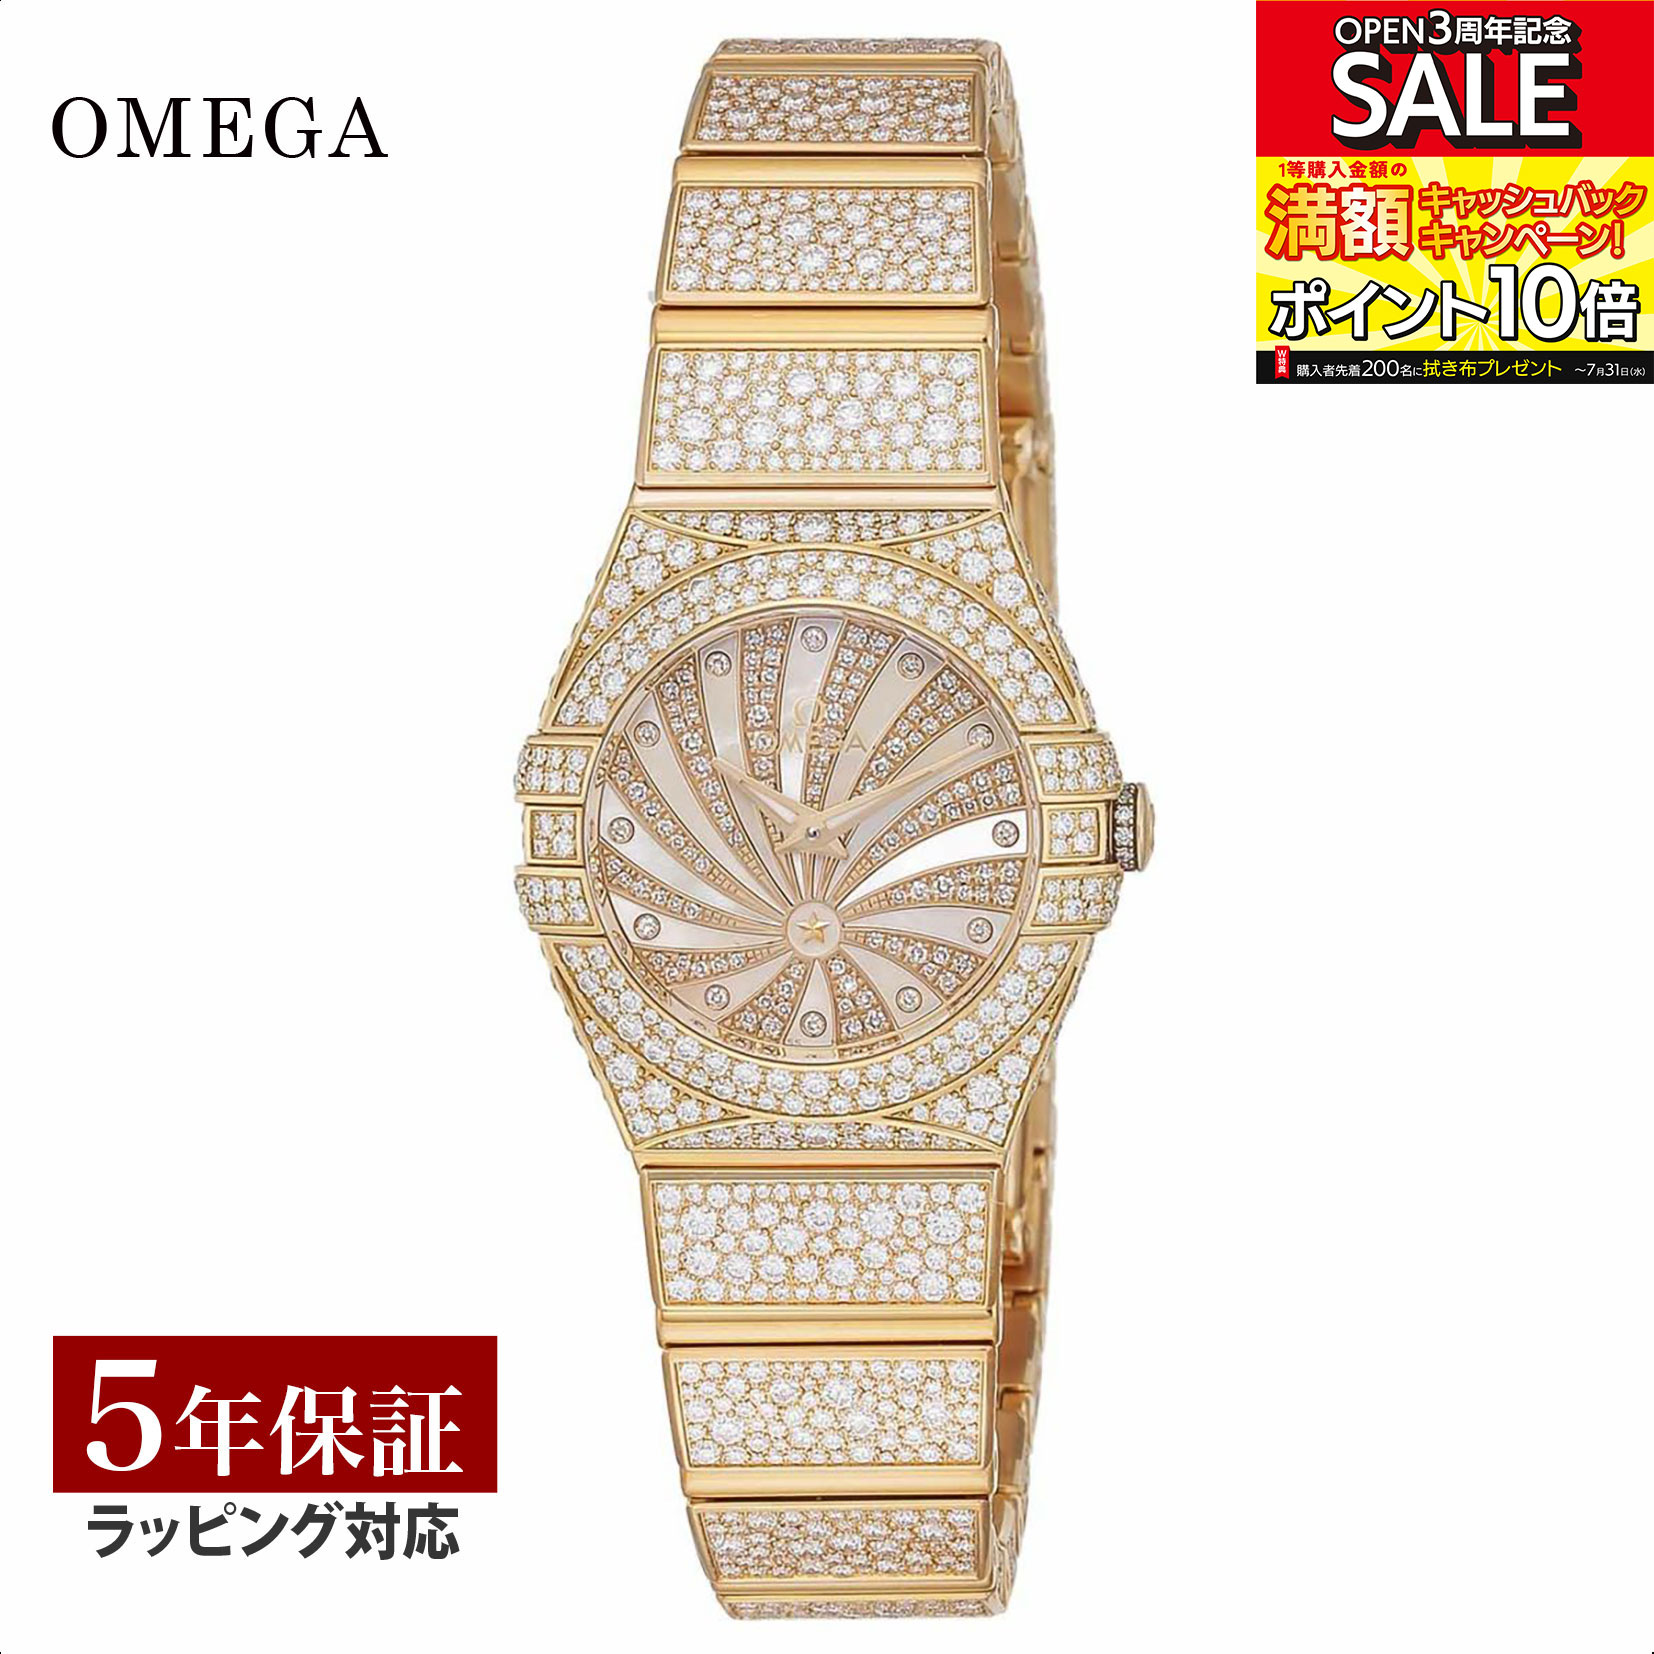 【当店限定】 オメガ OMEGA レディース 時計 CONSTELLATION コンステレーション クォーツ シルバー 123.55.24.60.55.009 時計 腕時計 高級腕時計 ブランド